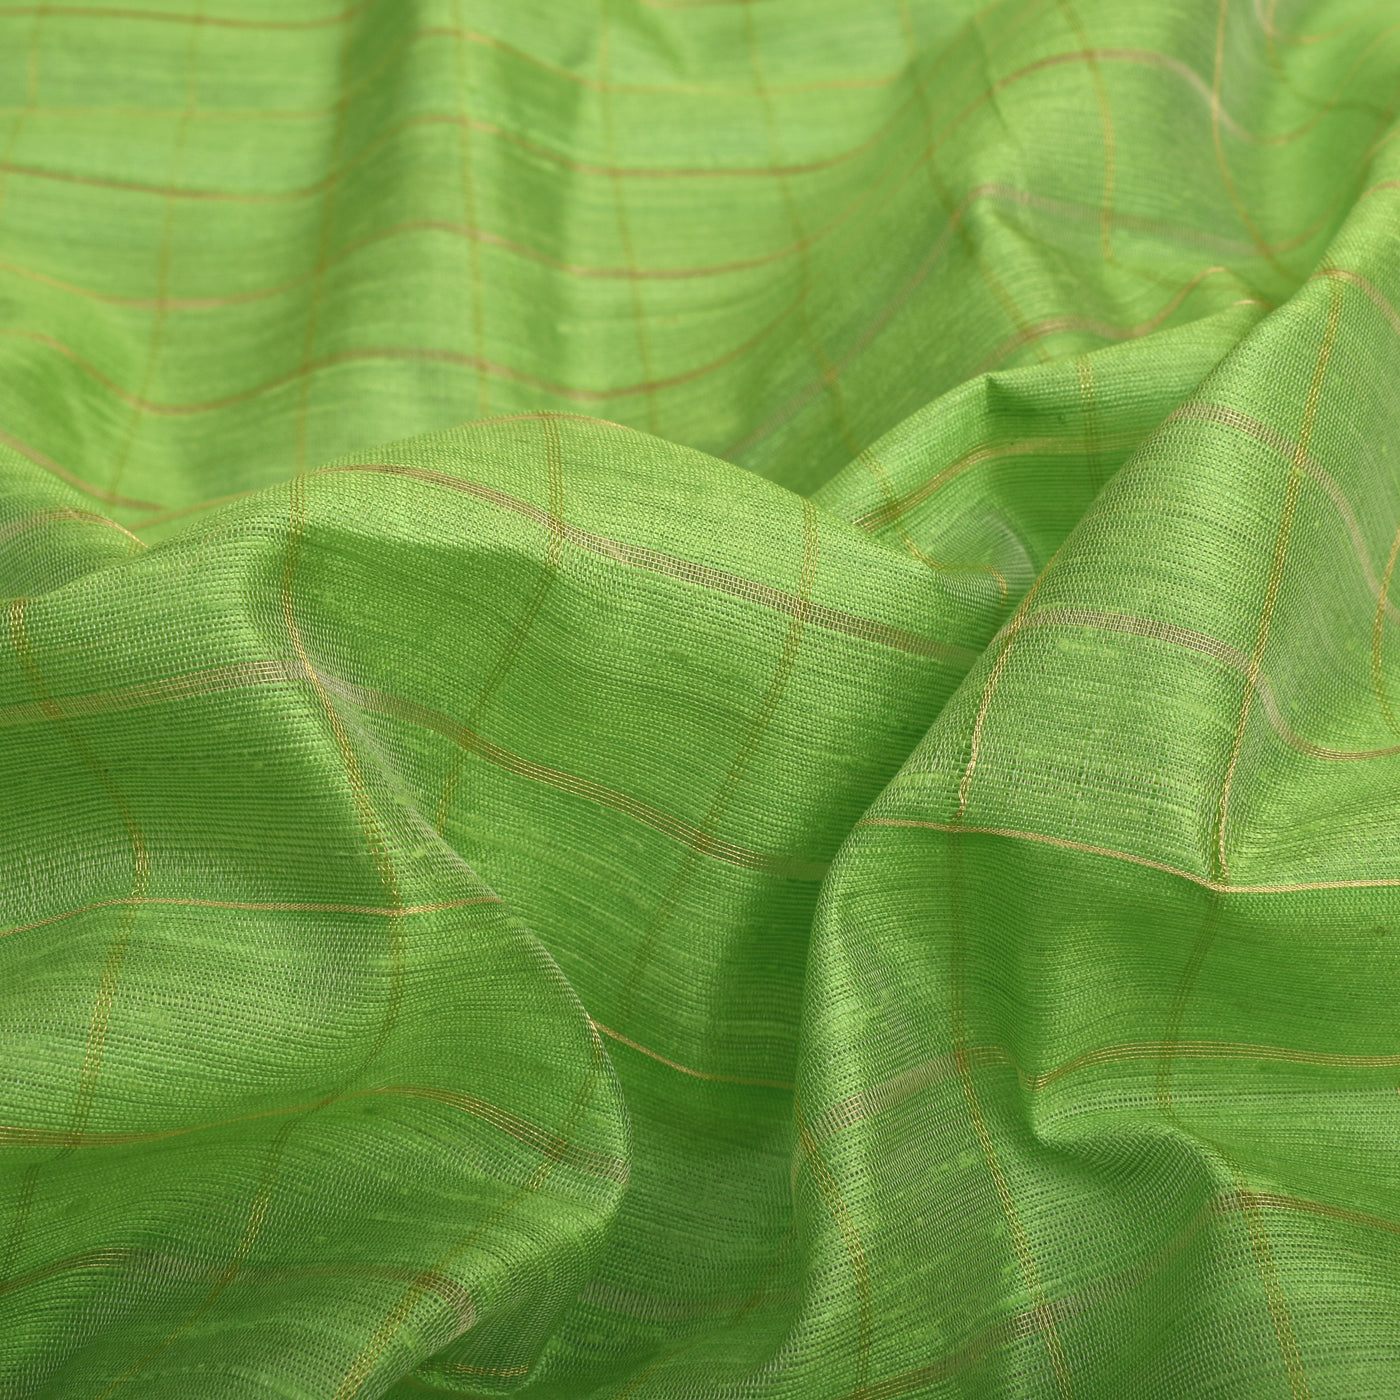 Samangha Green Tussar Raw Silk Fabric